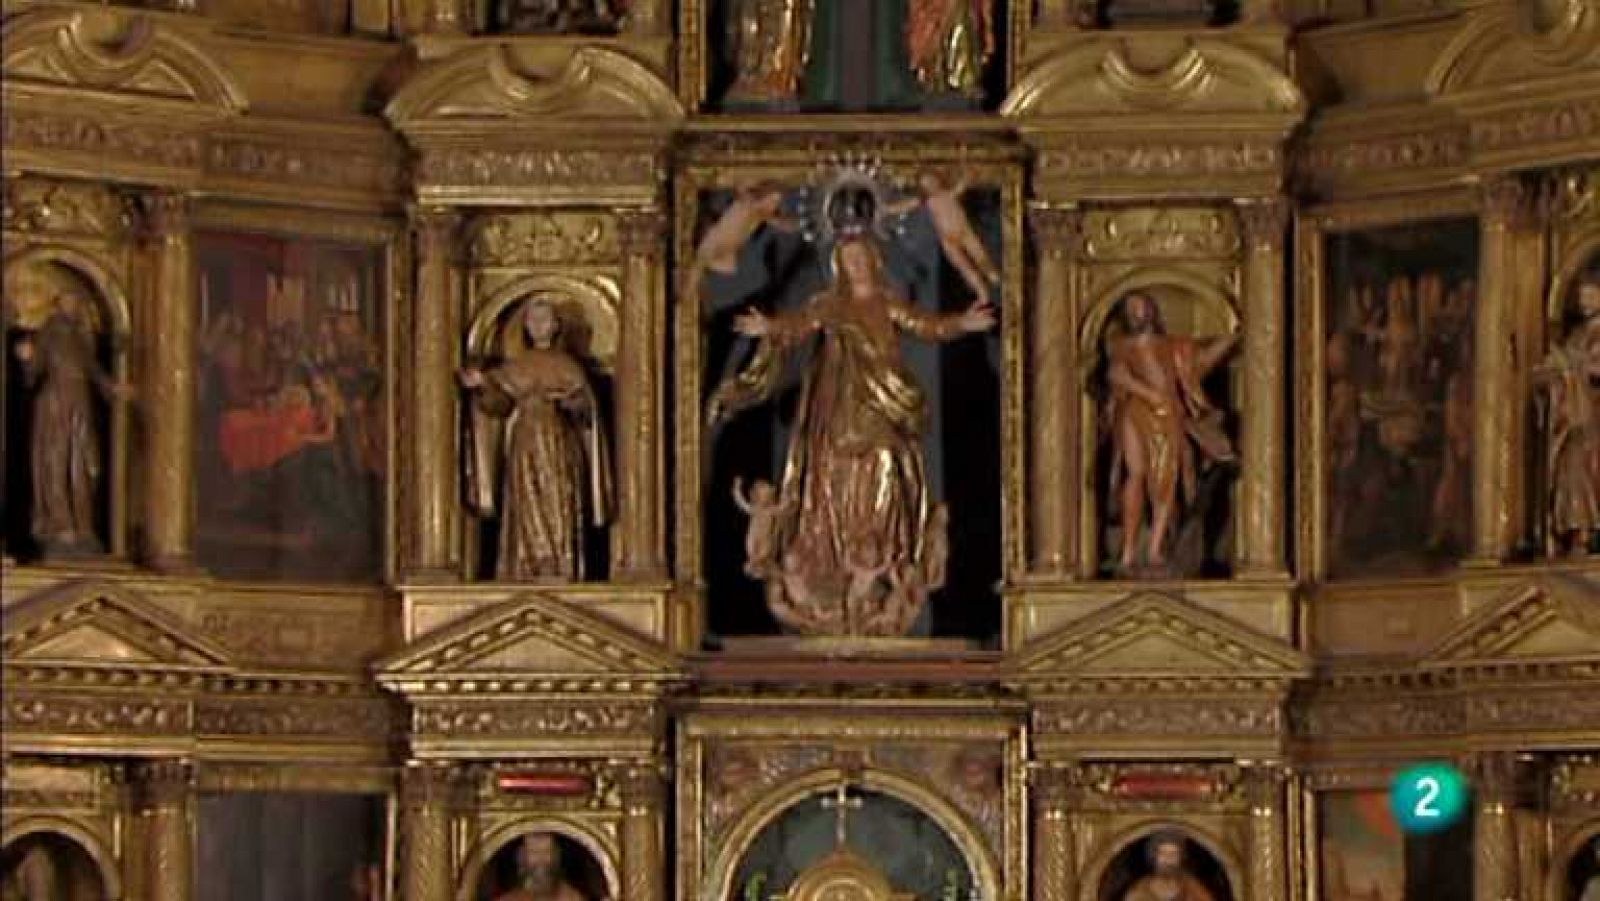 El día del Señor - Parroquia de Santa María de La Bañeza (León)